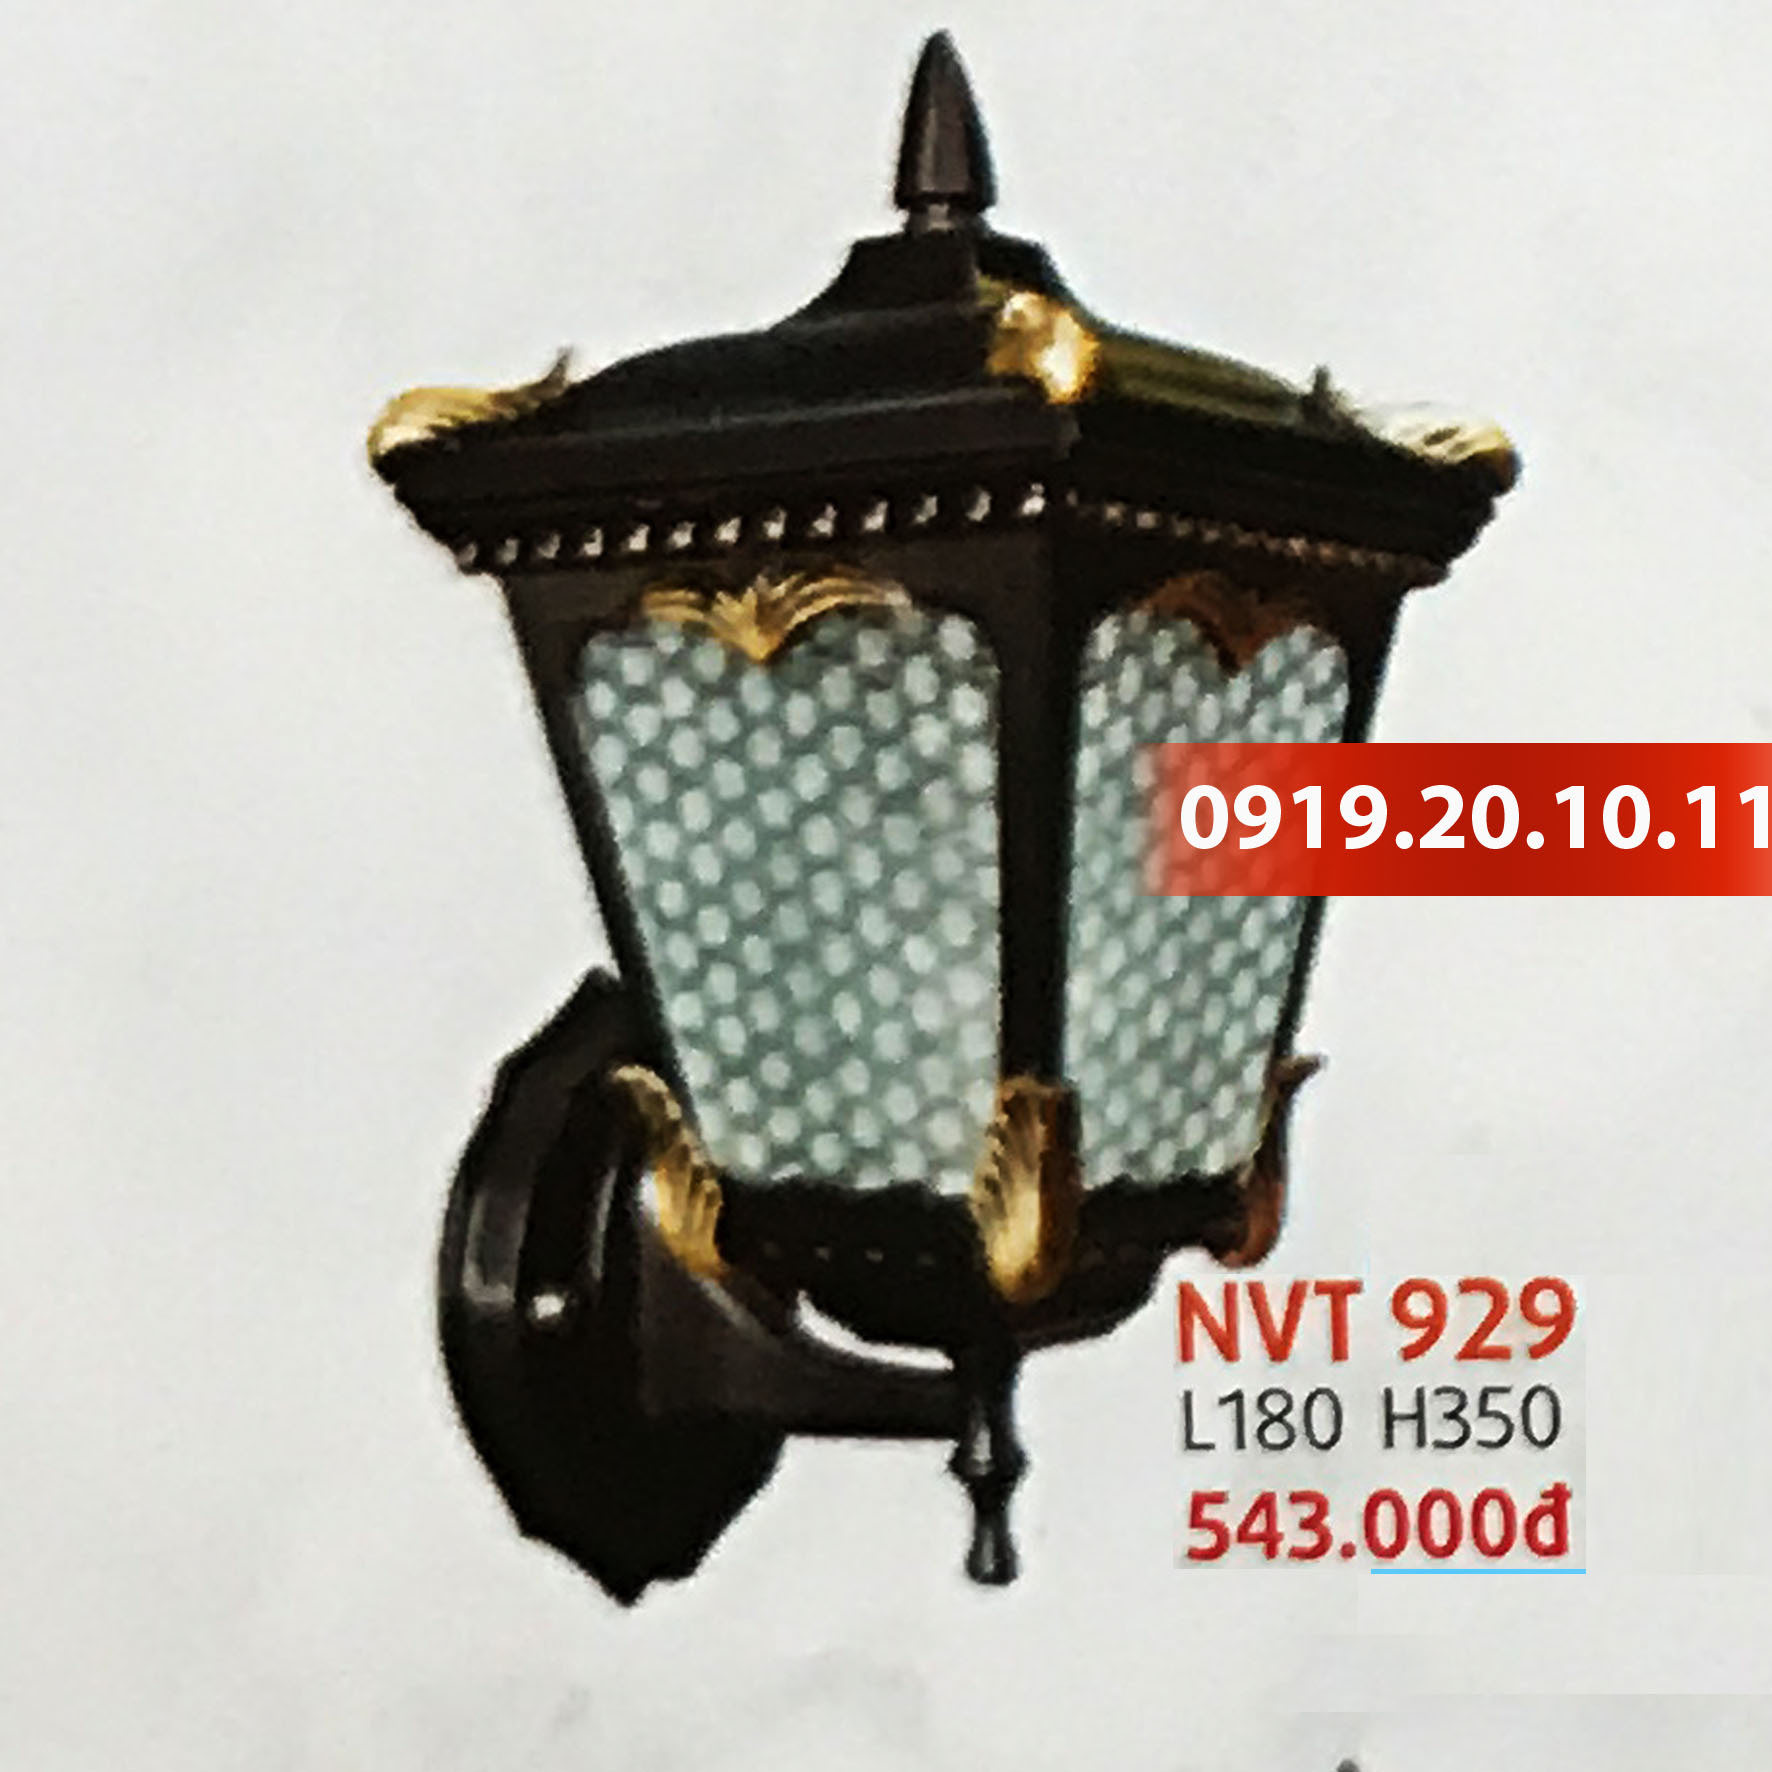 Đèn trang trí trụ cổng Netviet NVT-929